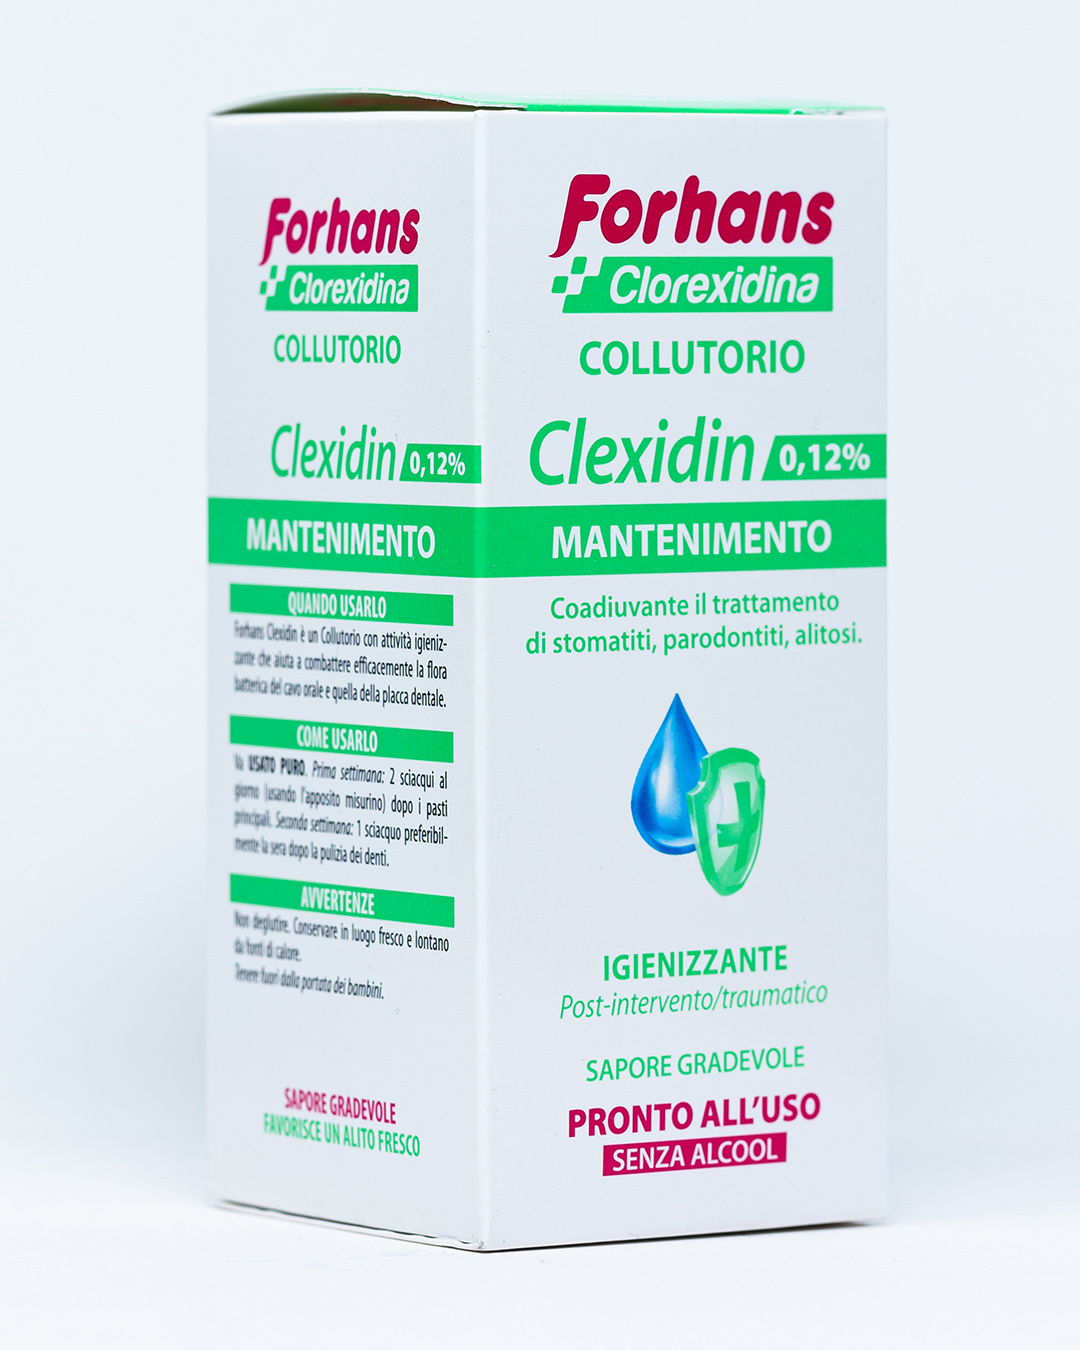 Forhans Clorexidina Collutorio Clexidin Mantenimento 0,12% - 200 ml